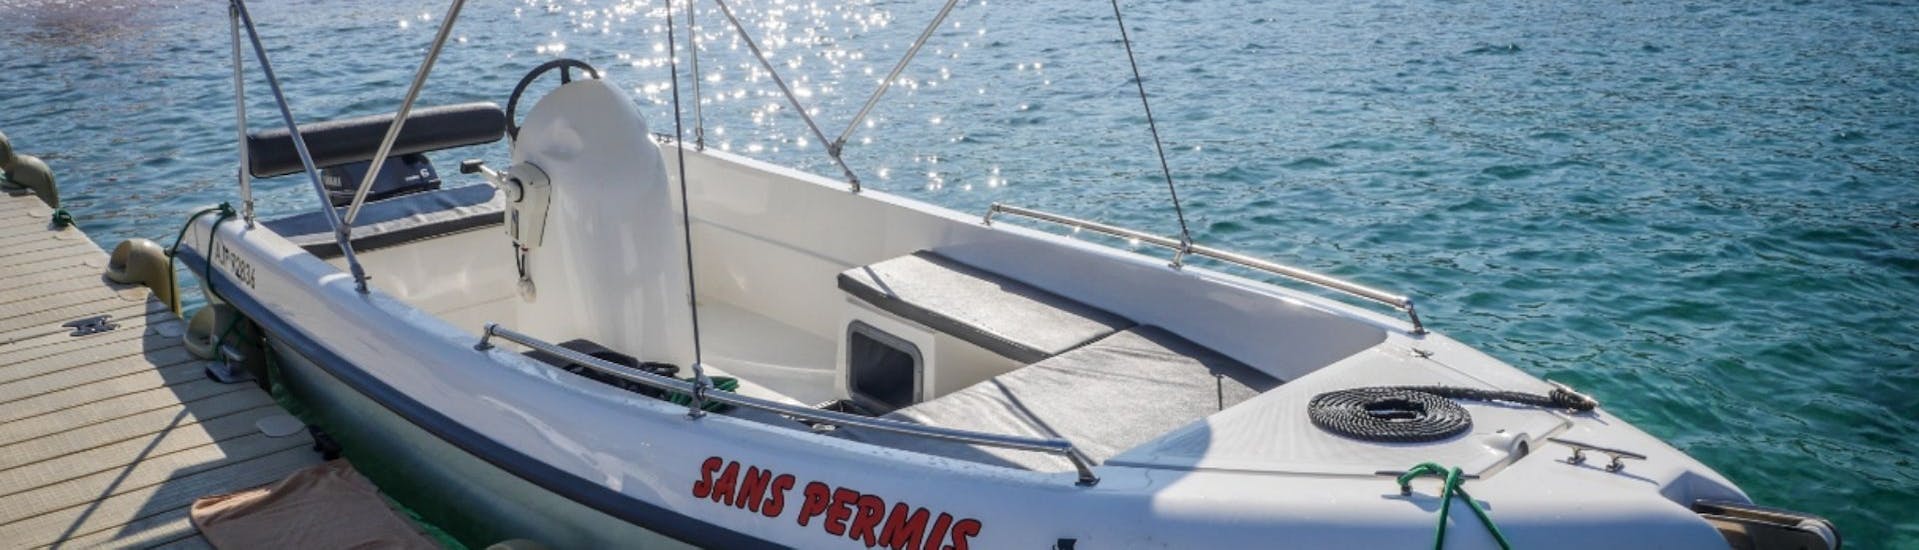 Le bateau que vous pouvez louer lors de la Location de bateau à Cargèse (jusqu'à 4 personnes) sans Permis avec Nautic Evasion Cargèse.